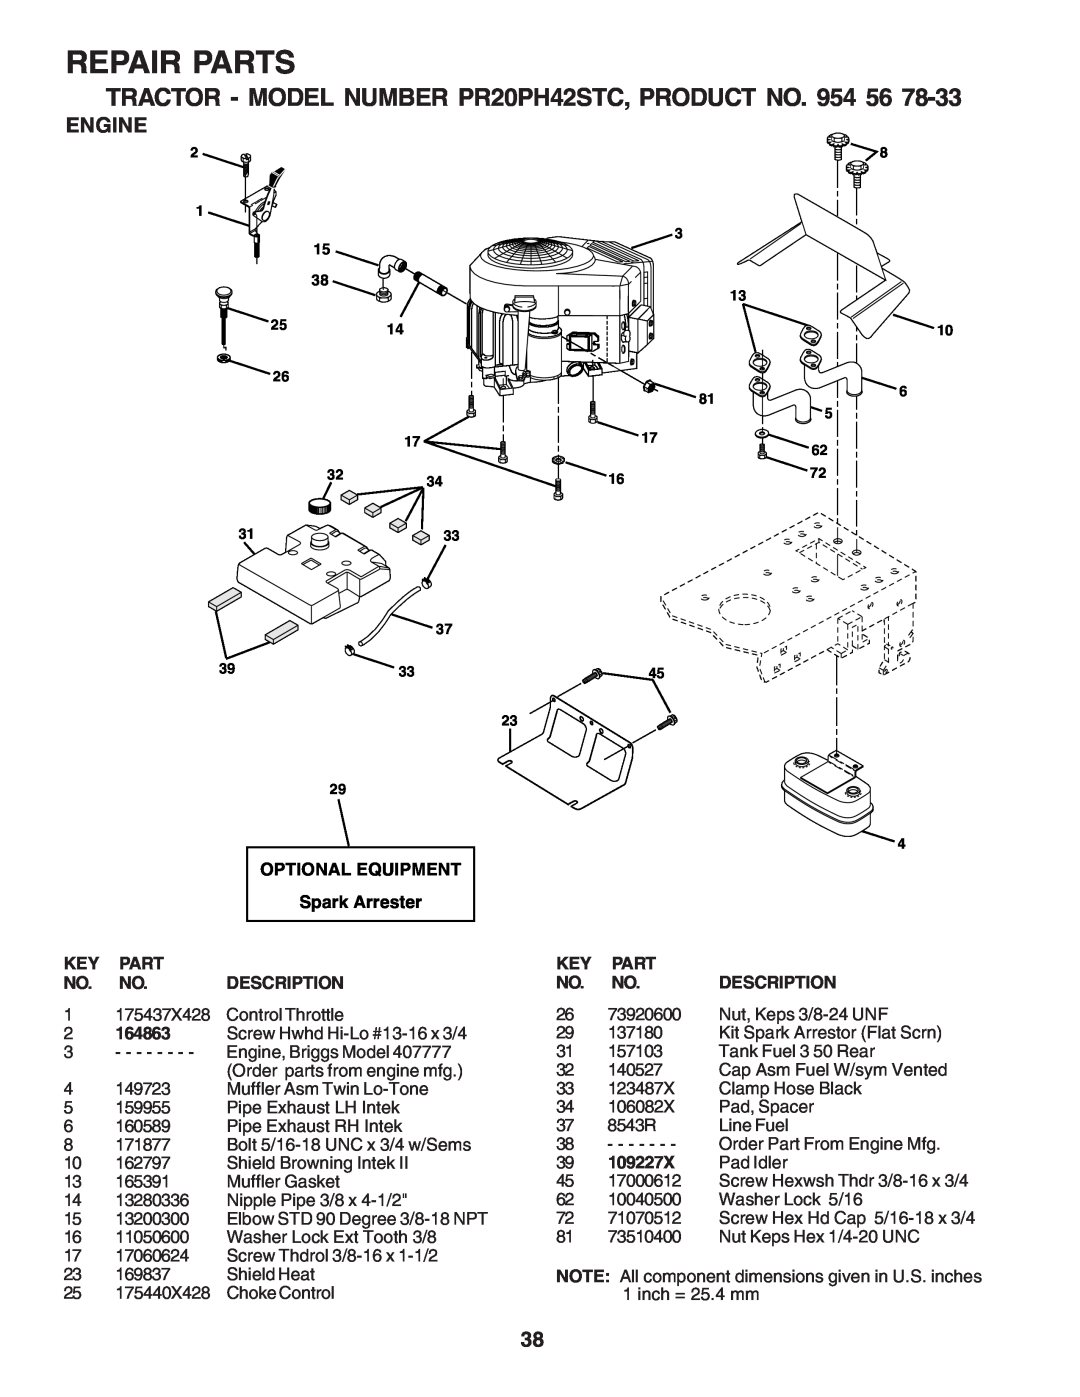 Poulan PR20PH42STC owner manual Engine, Repair Parts, Optional Equipment, Spark Arrester, Description, 164863, 109227X 